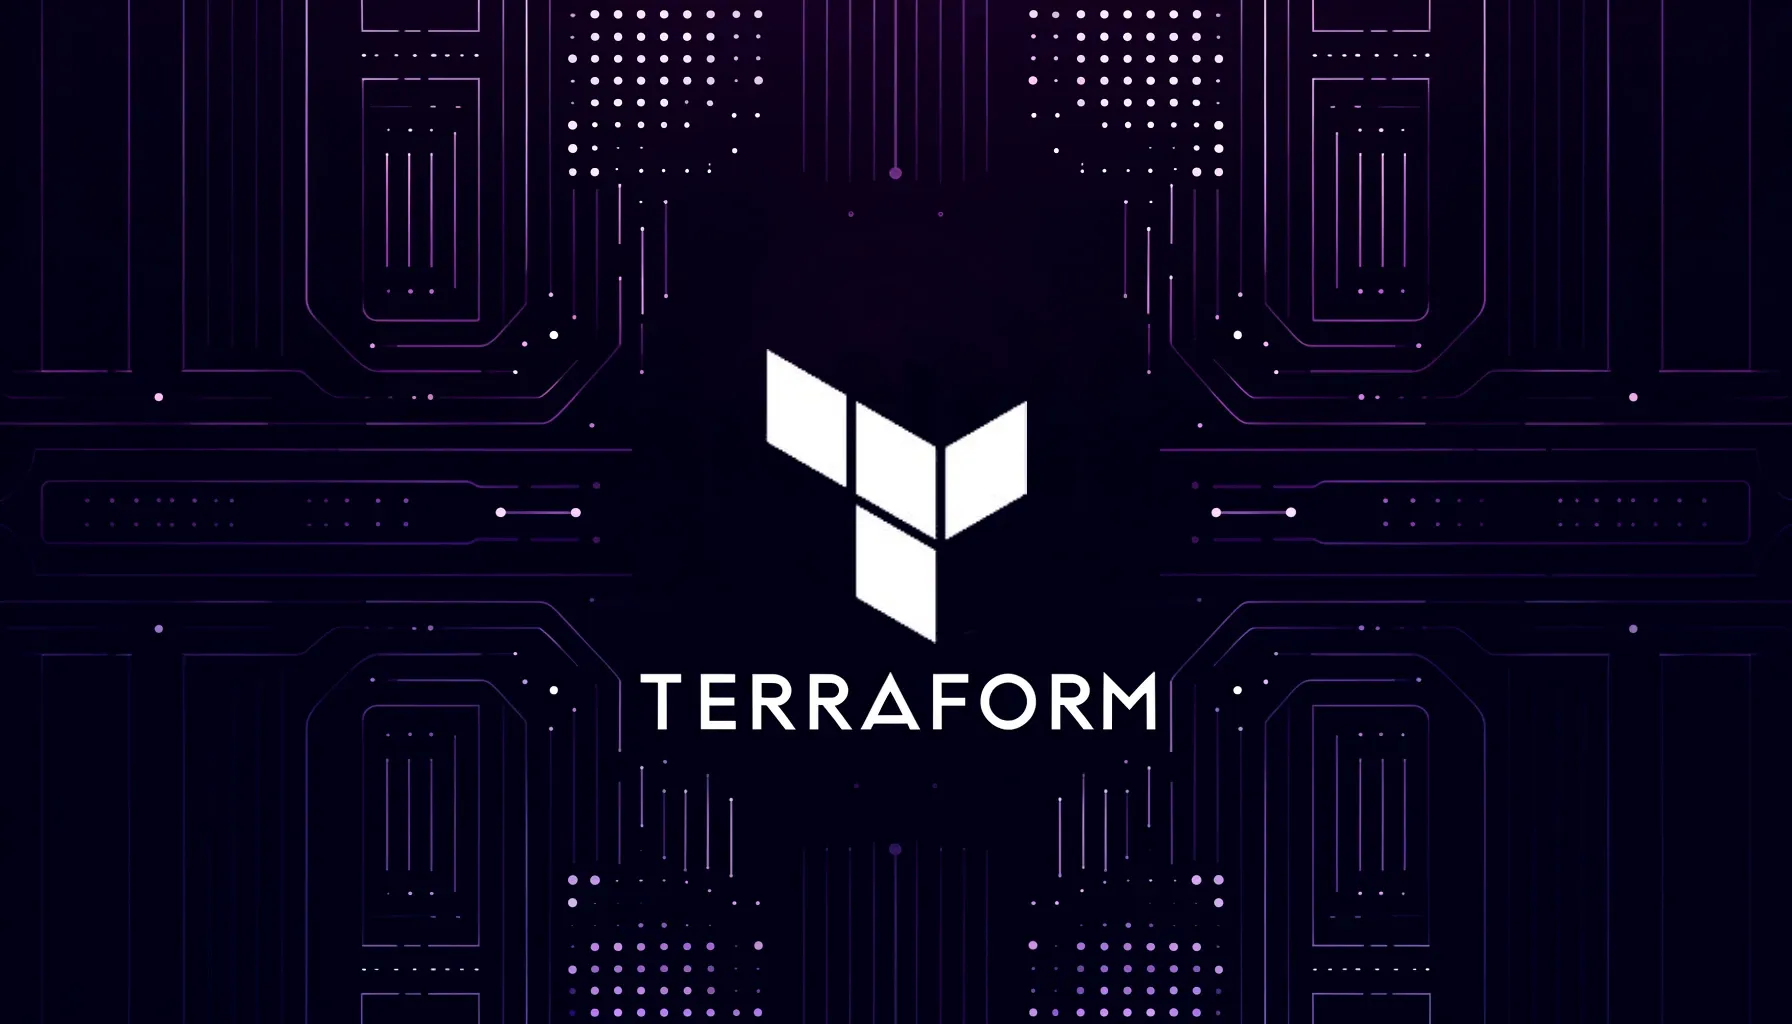 Terraform - Featured image